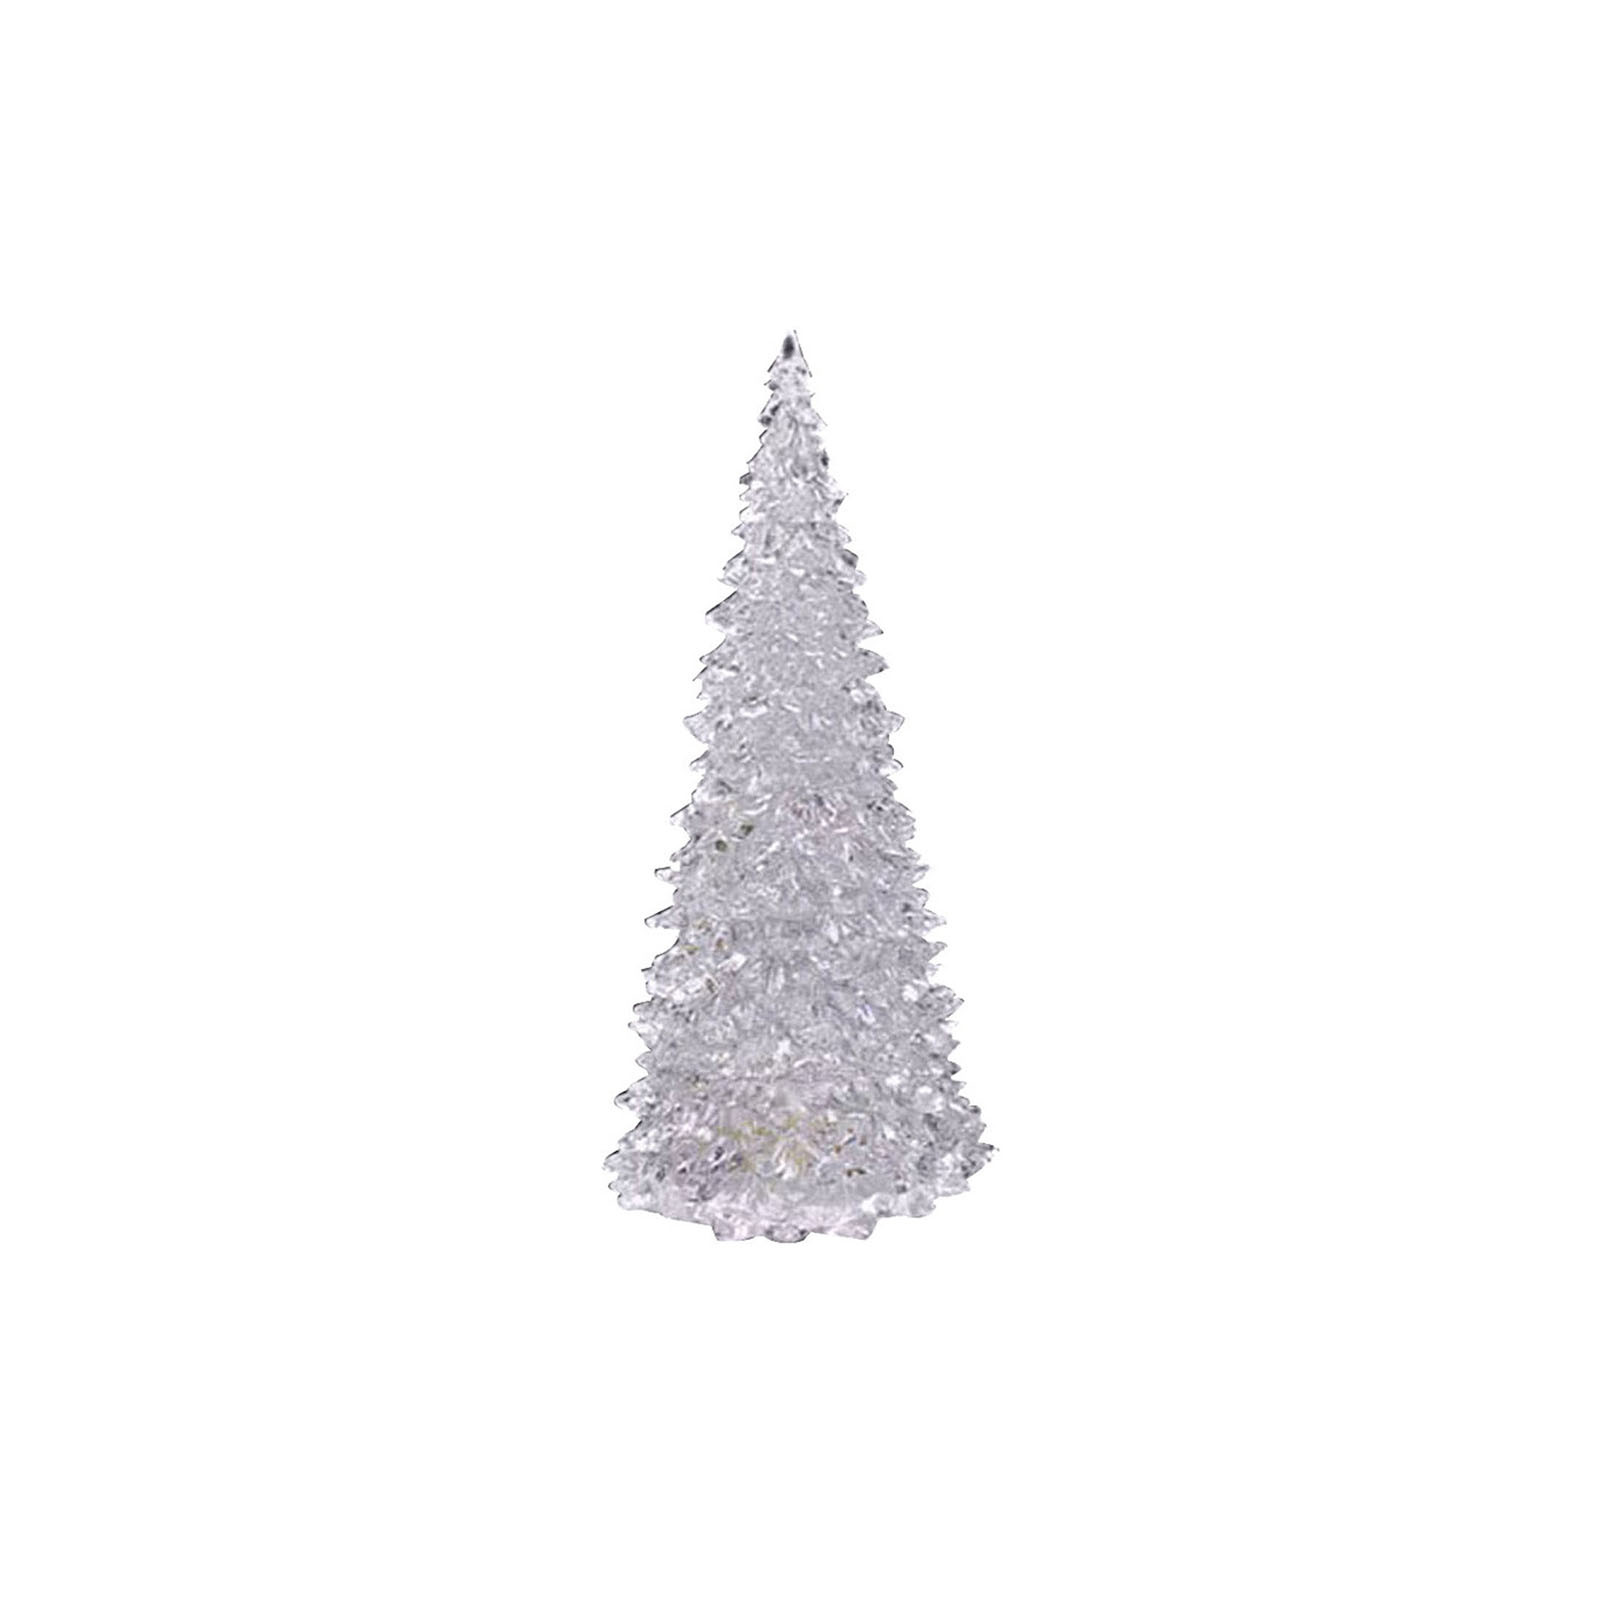 1 pezzi colorati da sogno colorati i colori a led che cambiano mini Natale di Natale albero casa decorazioni feste feste piccole notte acrilica